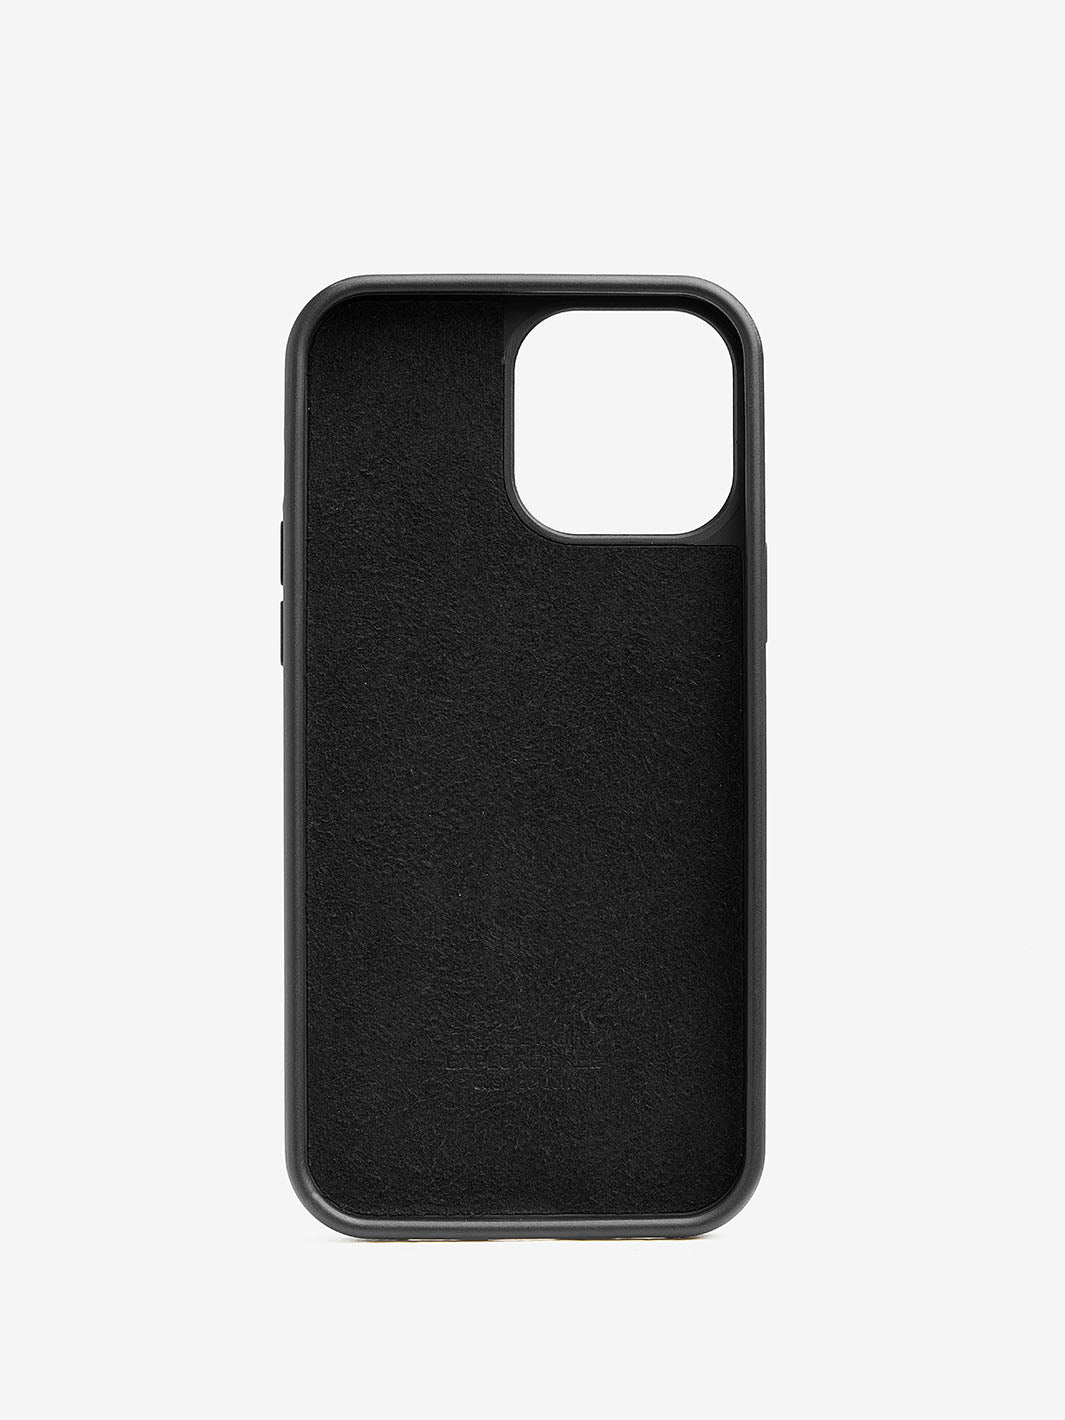 Square ring iPhone case black-02